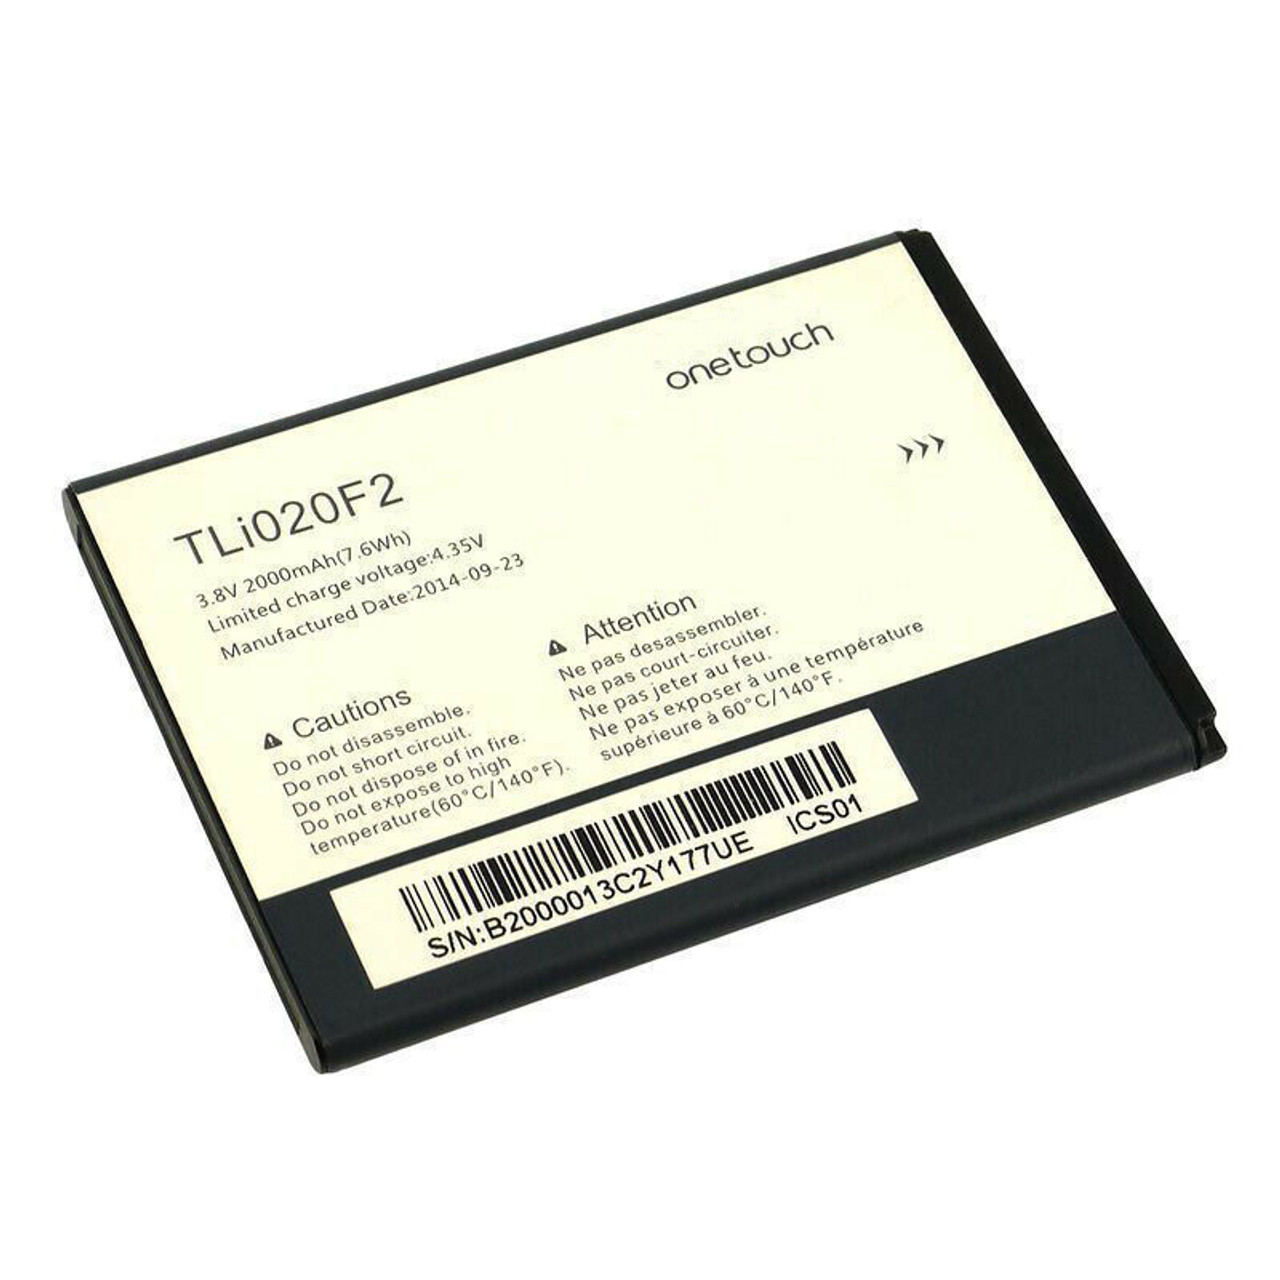 OEM SPEC Battery For Alcatel TLi020F2 One Touch Fierce 2 7040N Original Alcatel